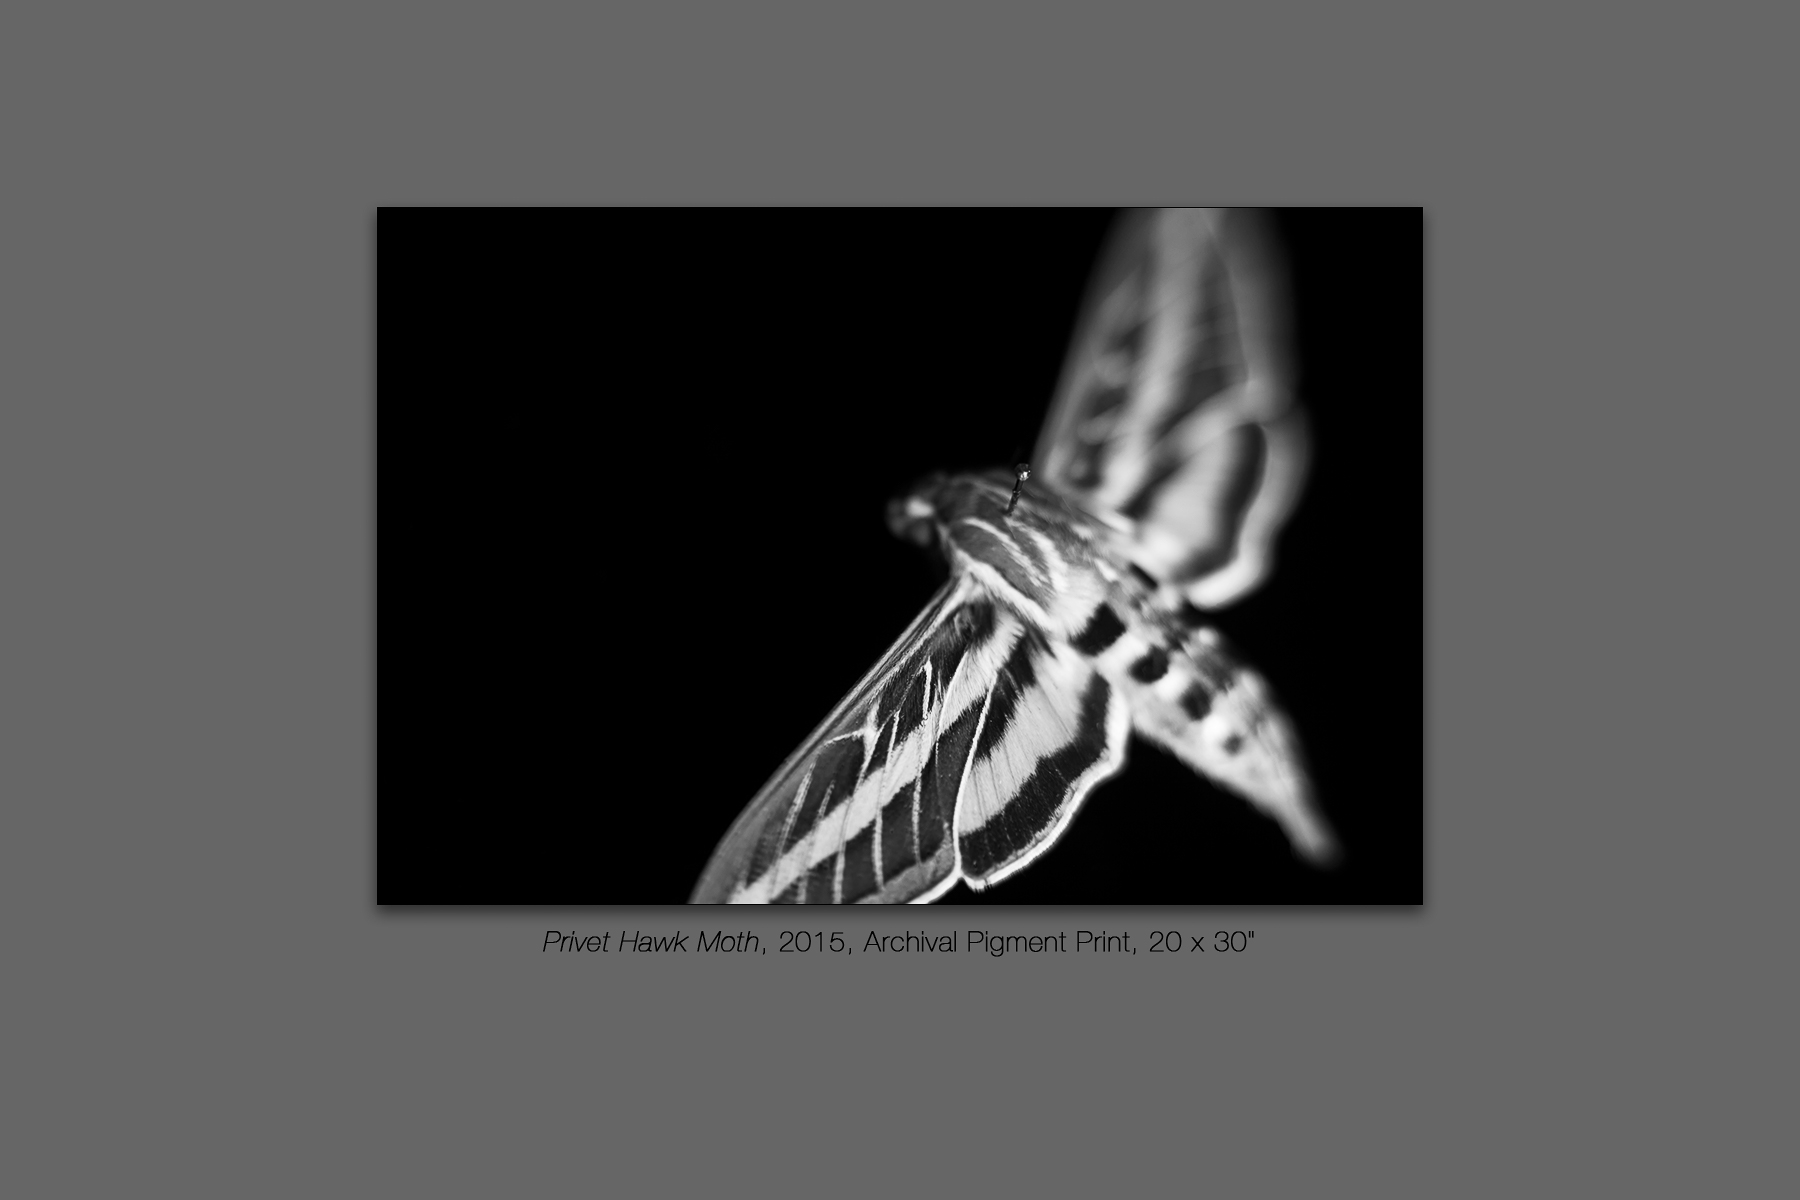 Privet Hawk Moth, 2015